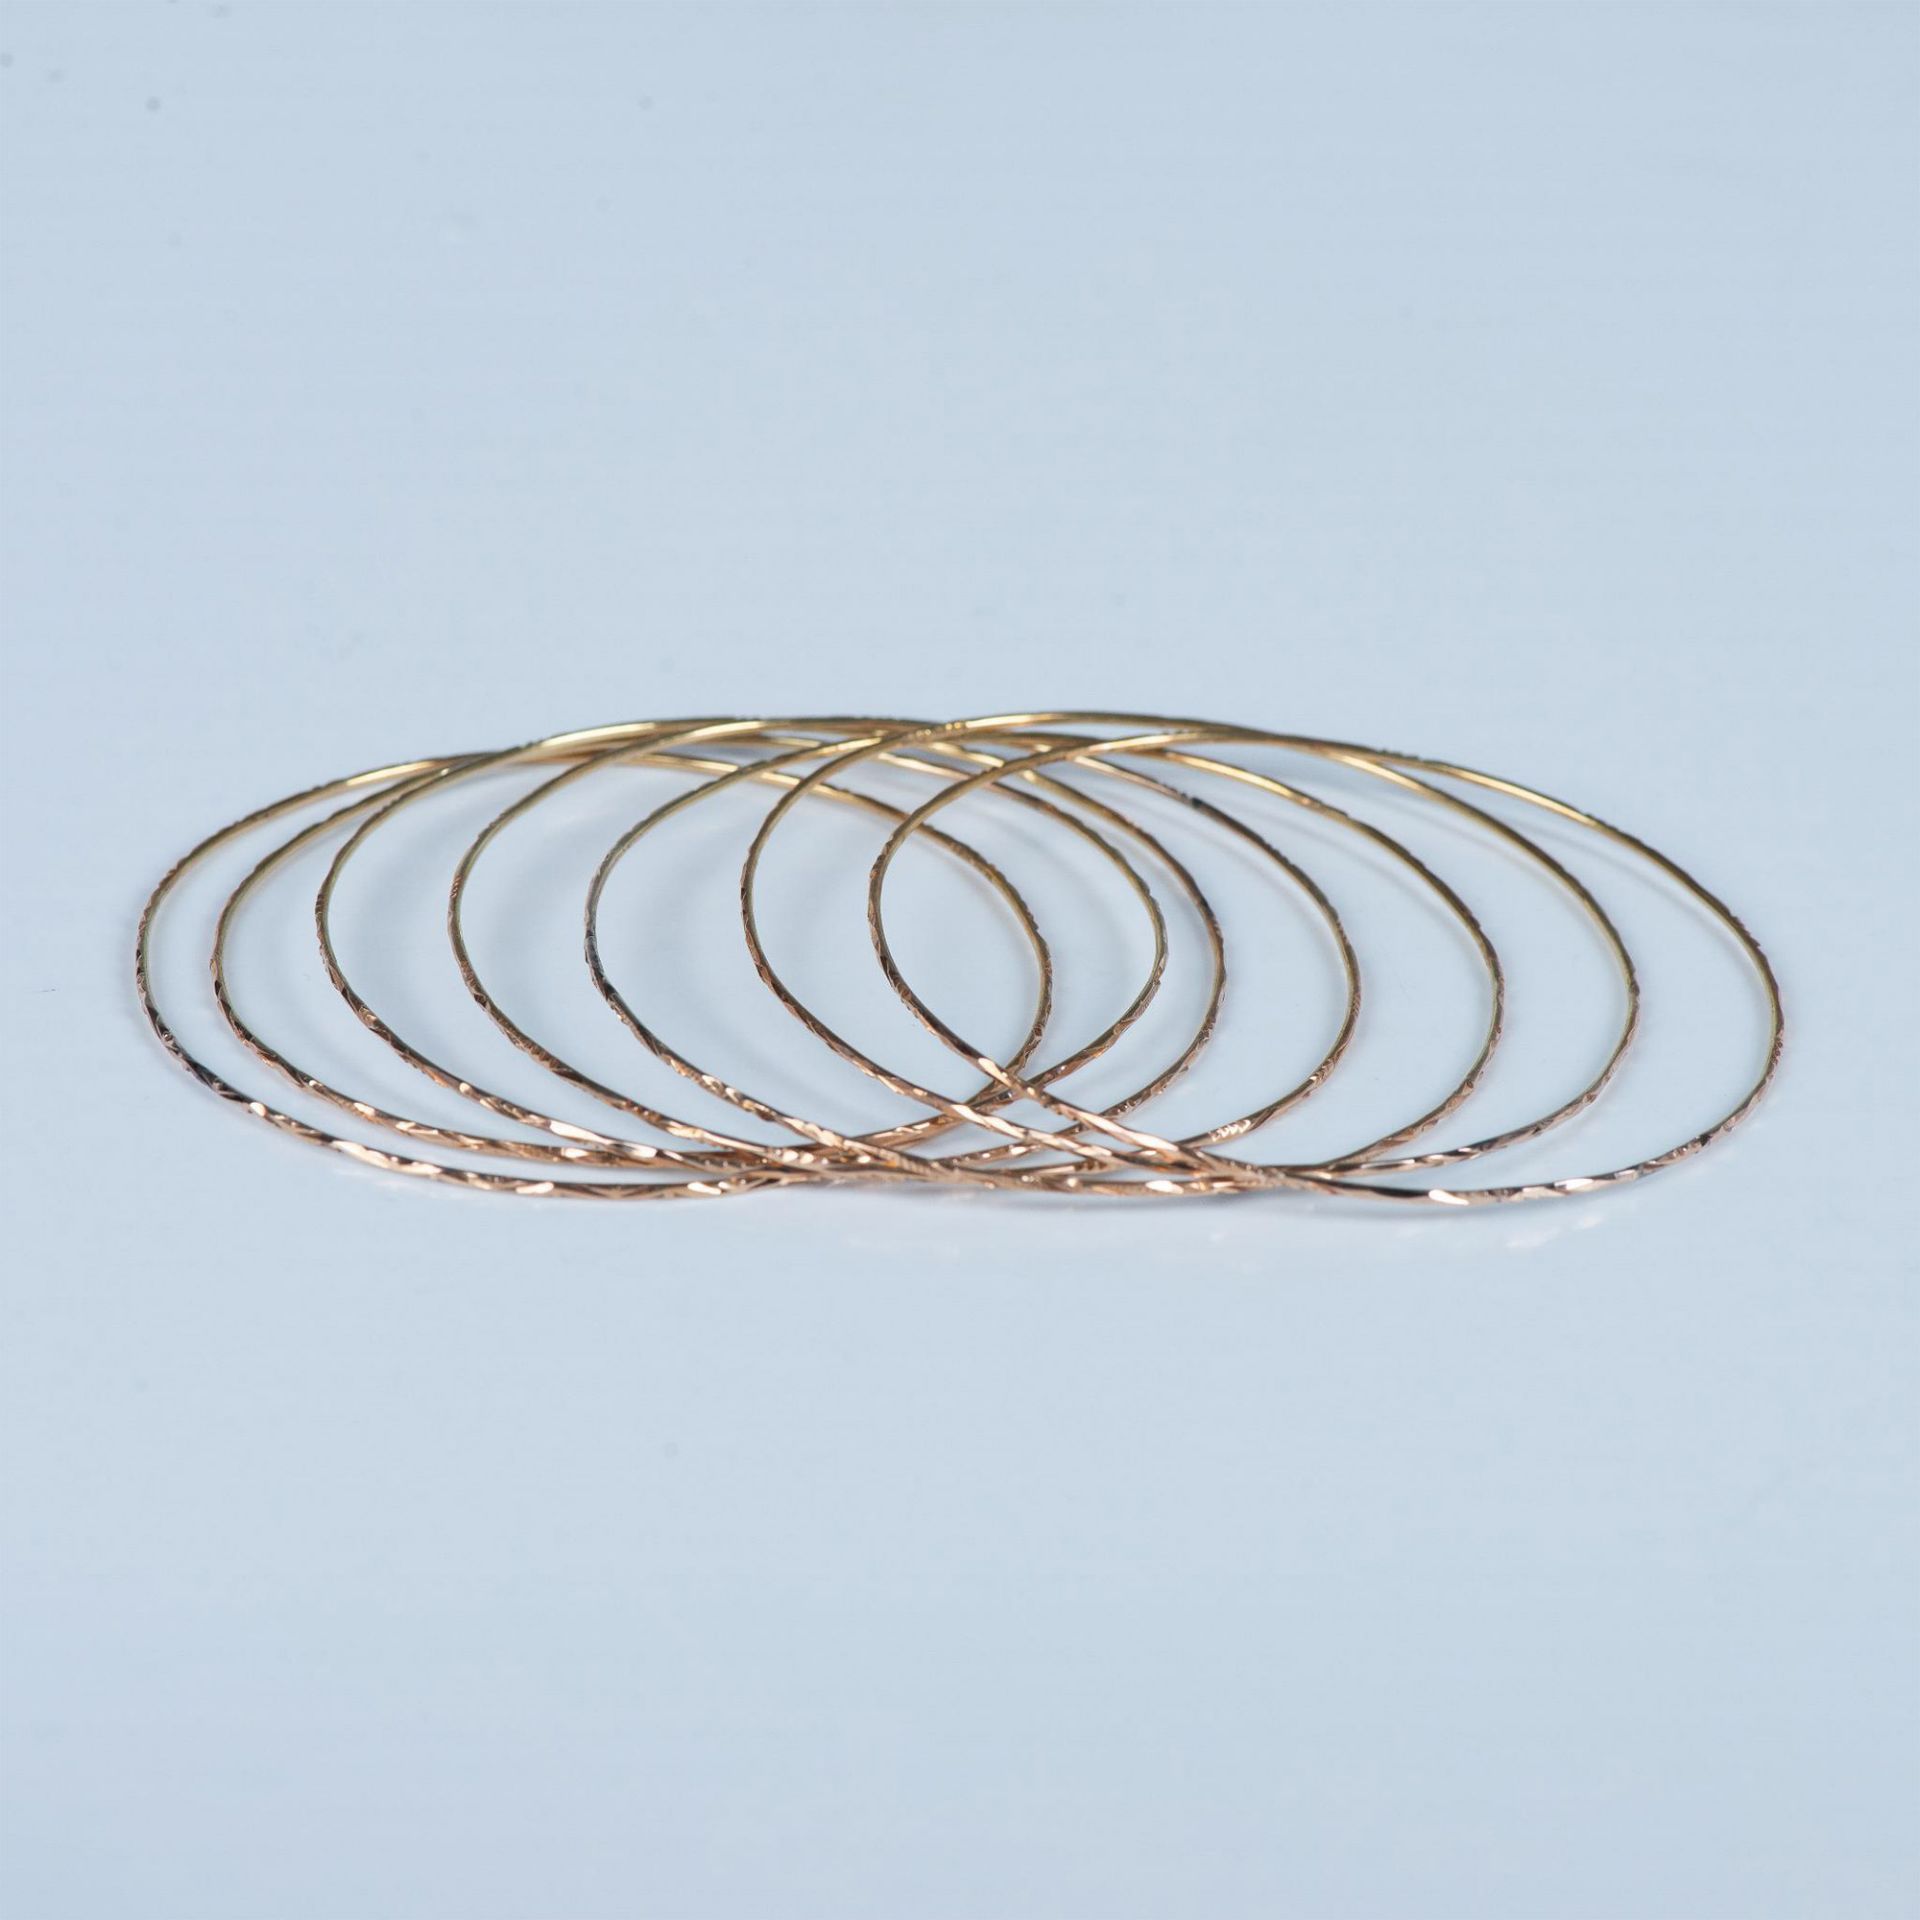 7pc Set of Fine 14K Gold Bangle Bracelets - Image 3 of 5